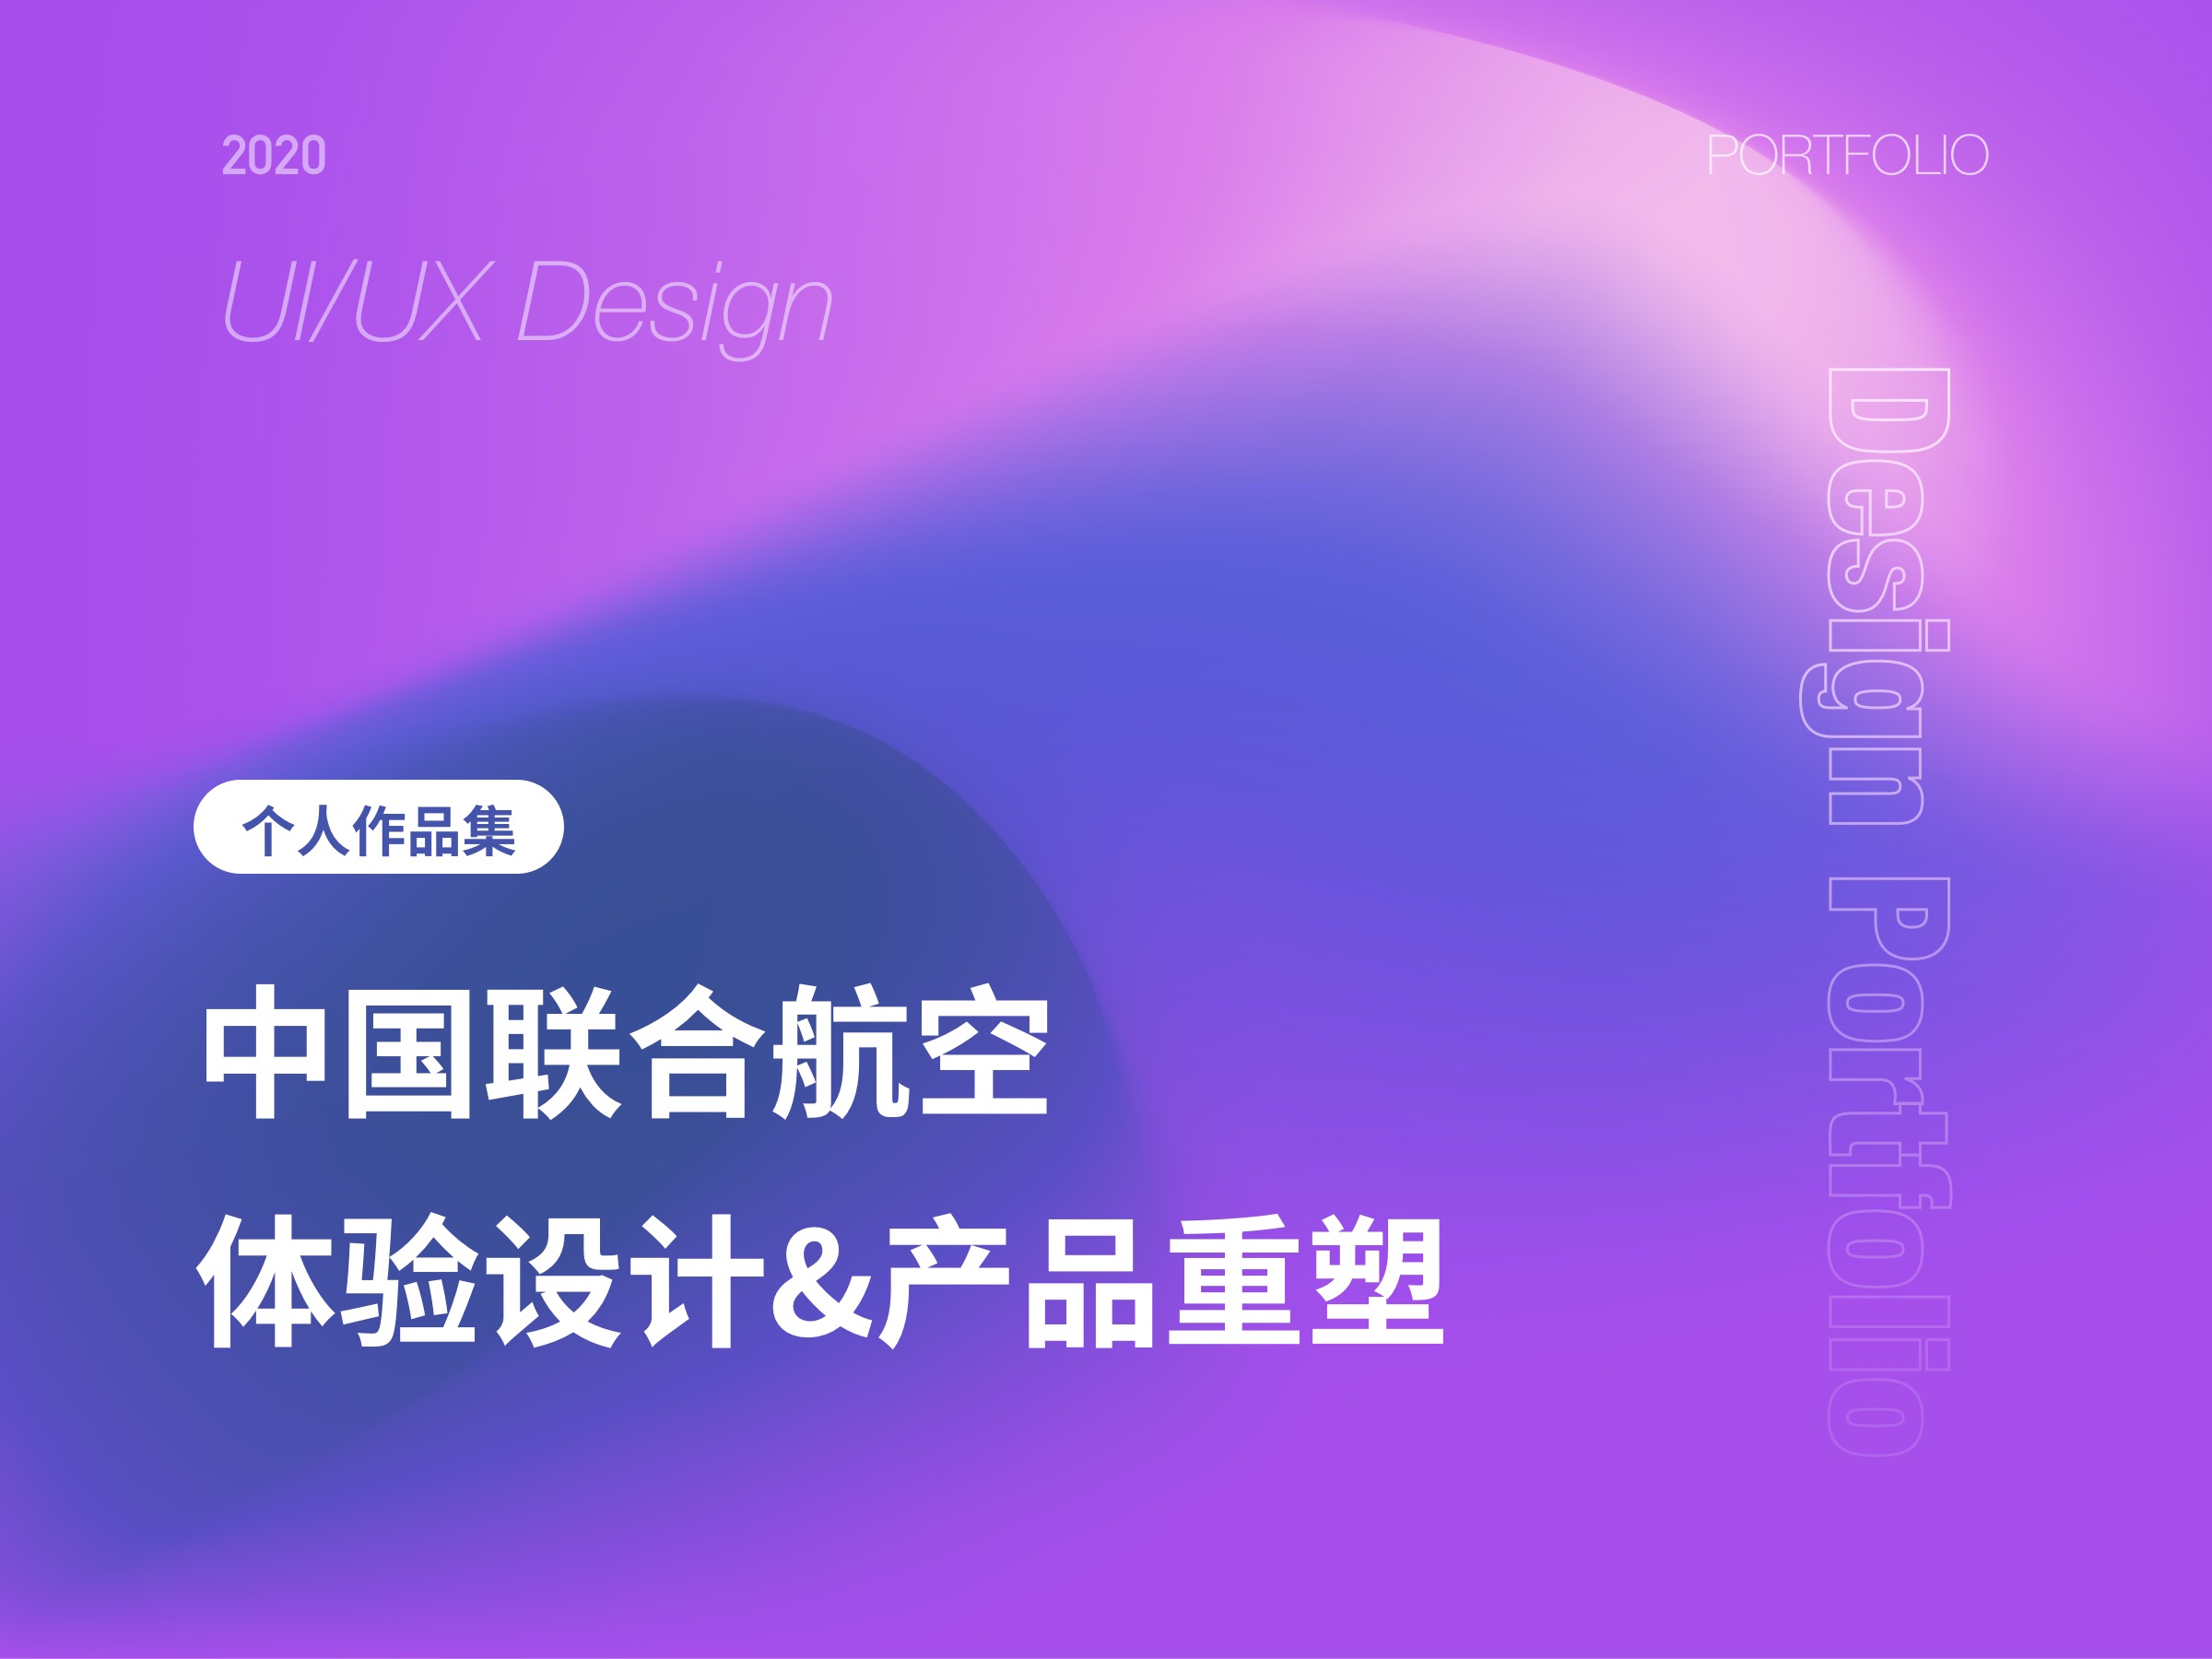 中国联合航空体验设计与产品重塑-UX HCI工作项目整理